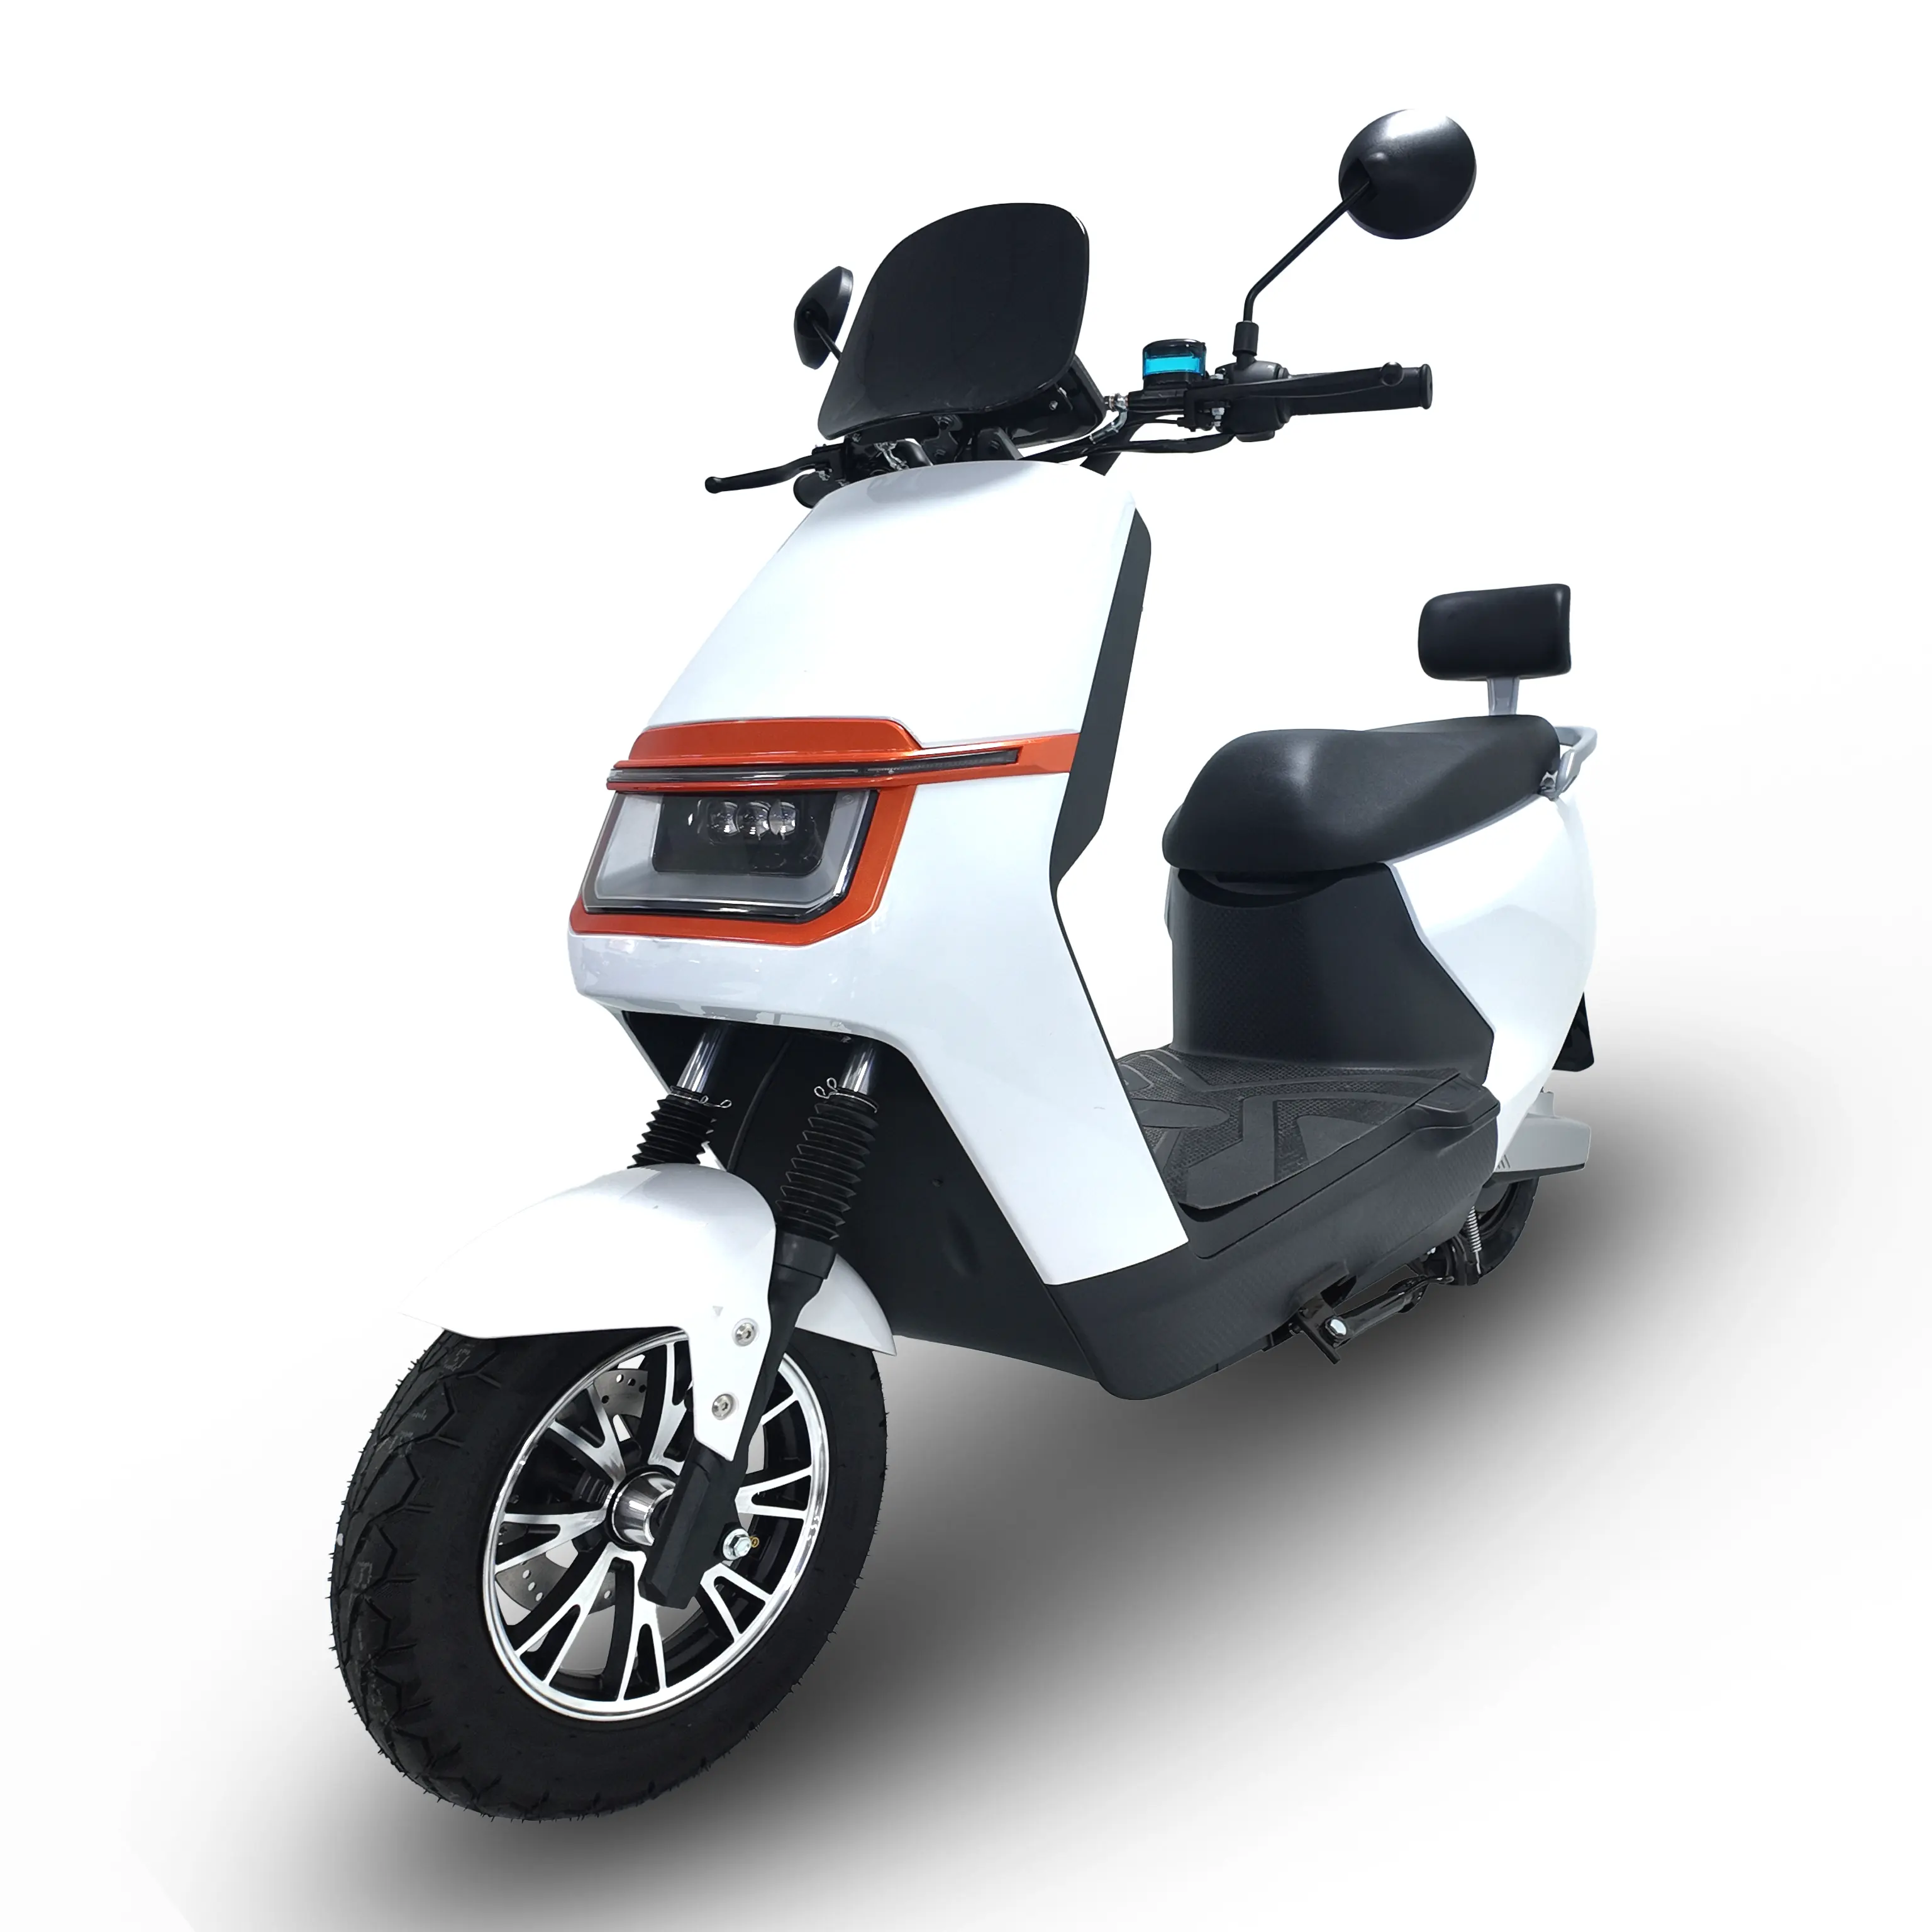 Último modelo de motocicleta ciclomotor eléctrico para adultos fábrica precio al por mayor Scooter Eléctrico barato